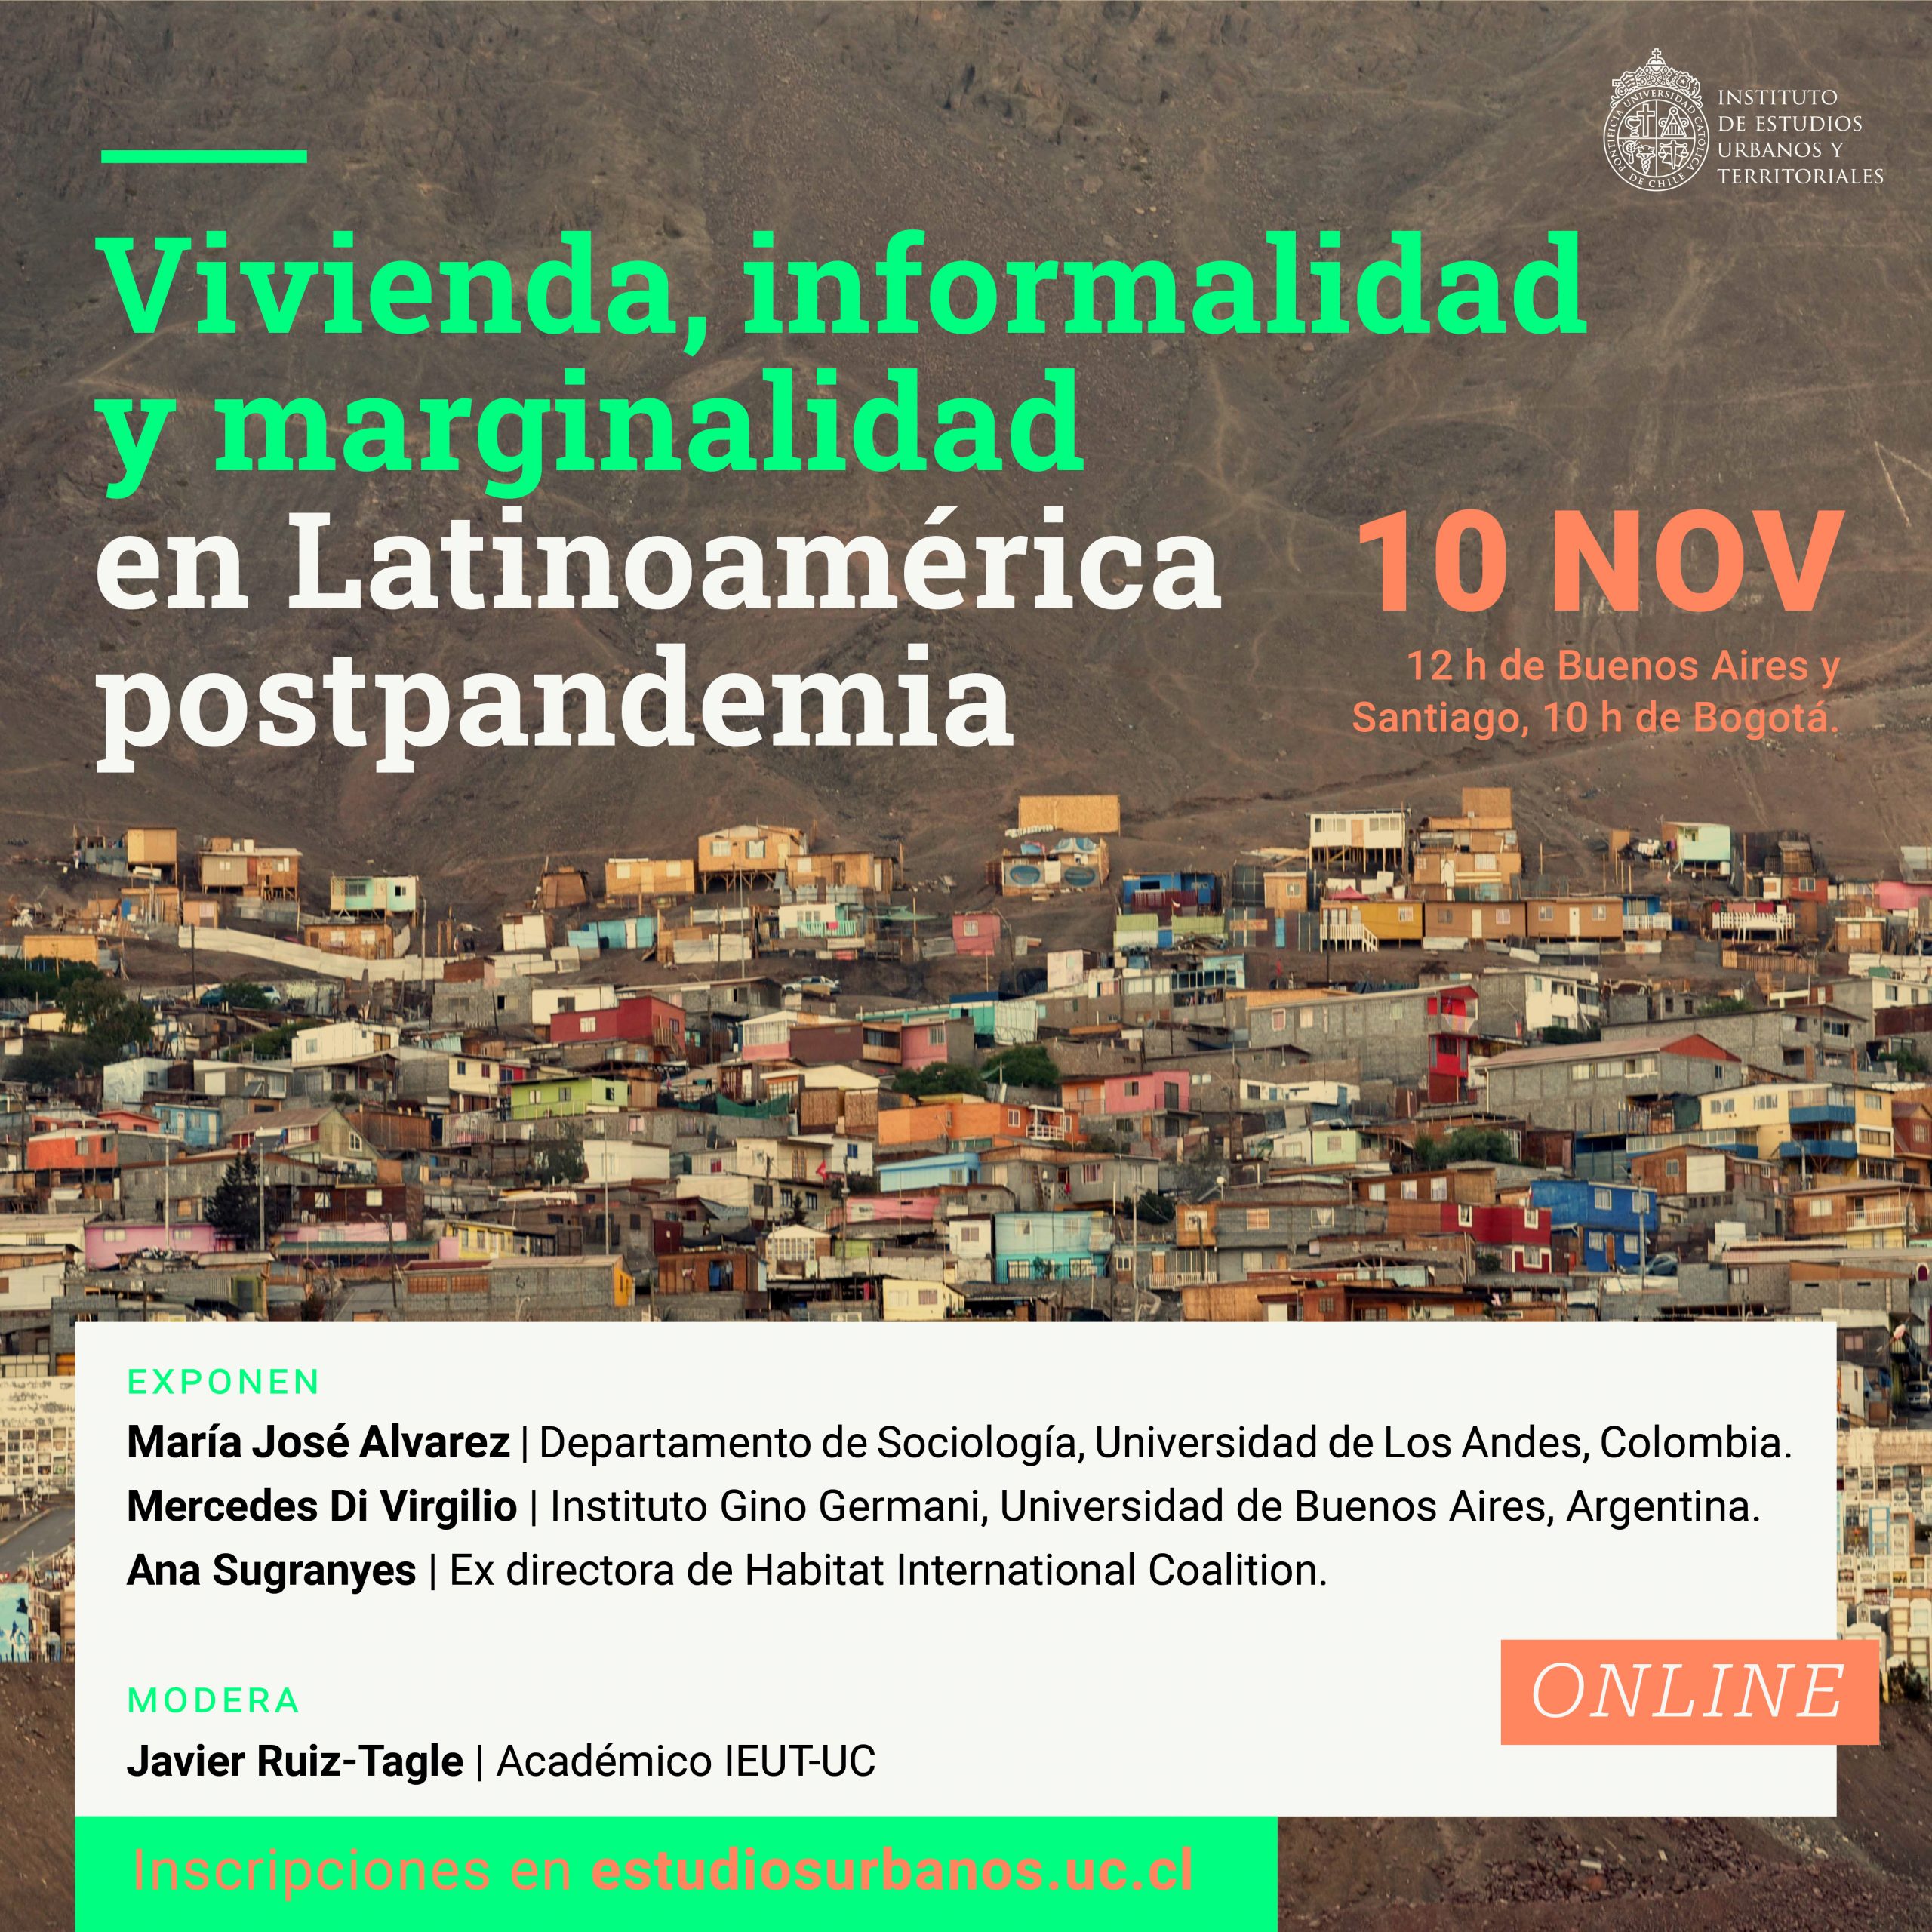 SEMINARIO | Vivienda, informalidad y marginalidad  en Latinoamérica postpandemia